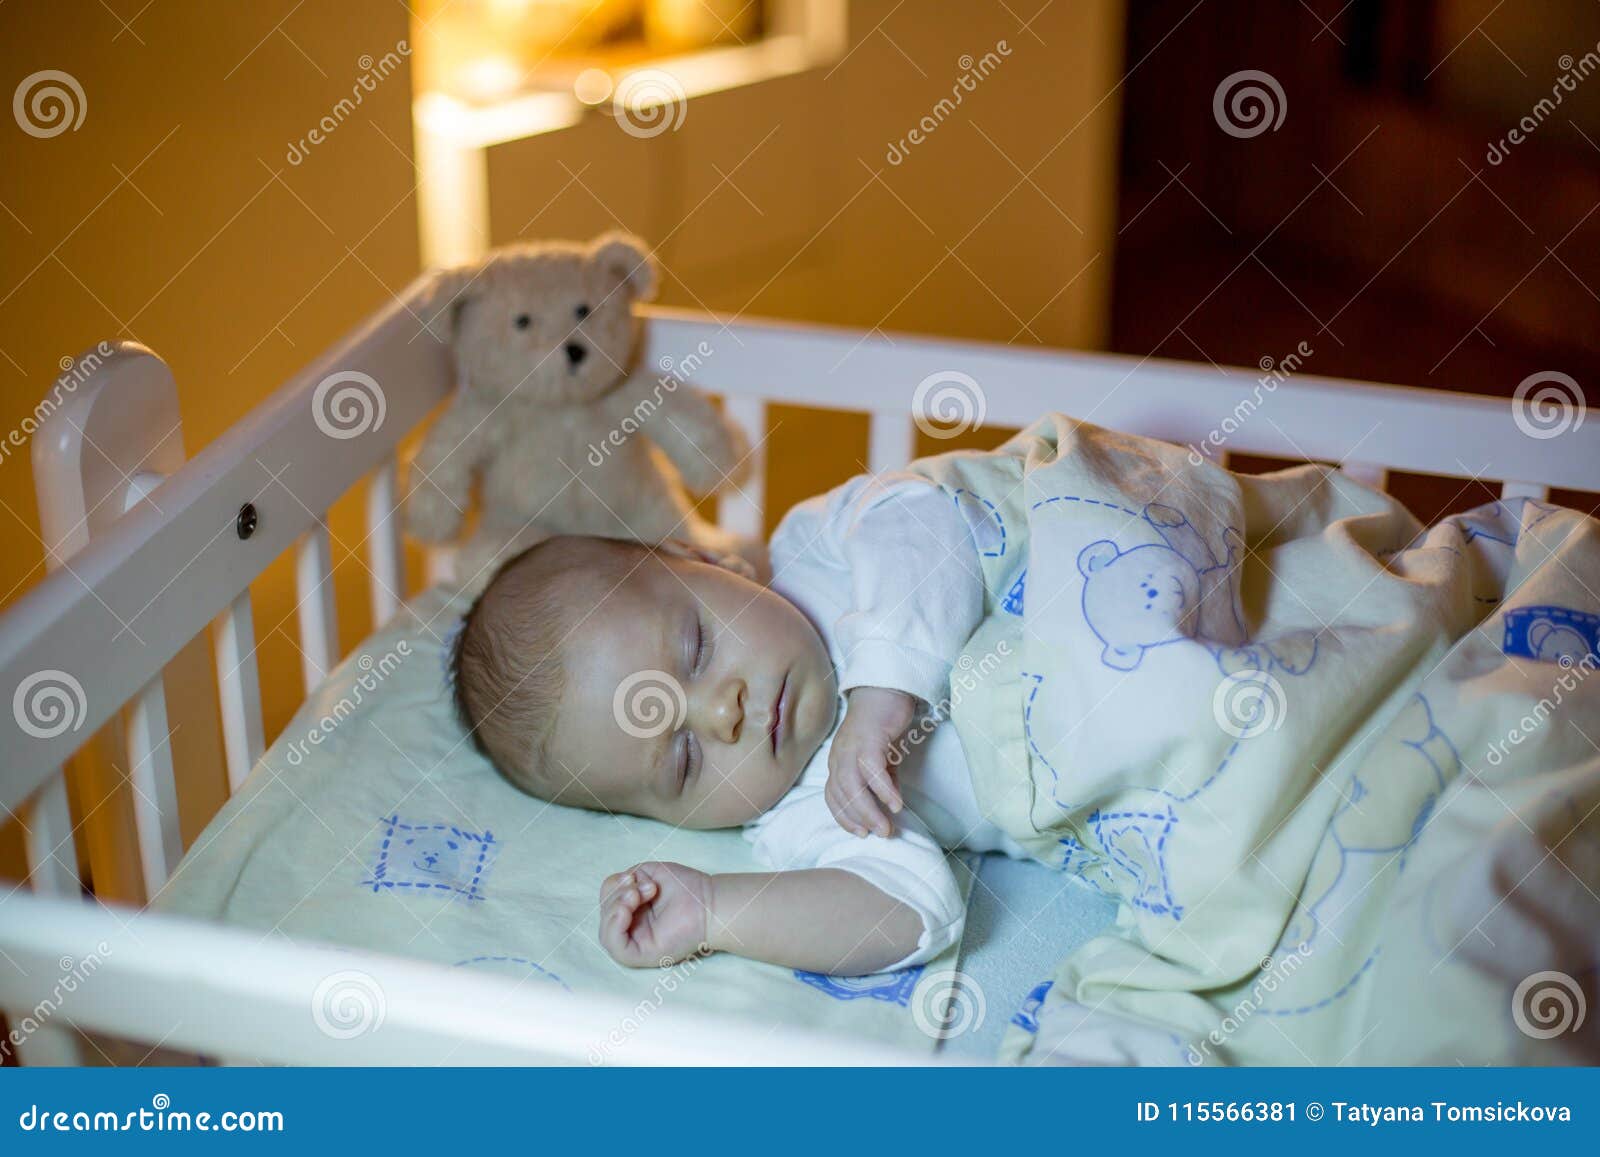 newborn sleeping in crib